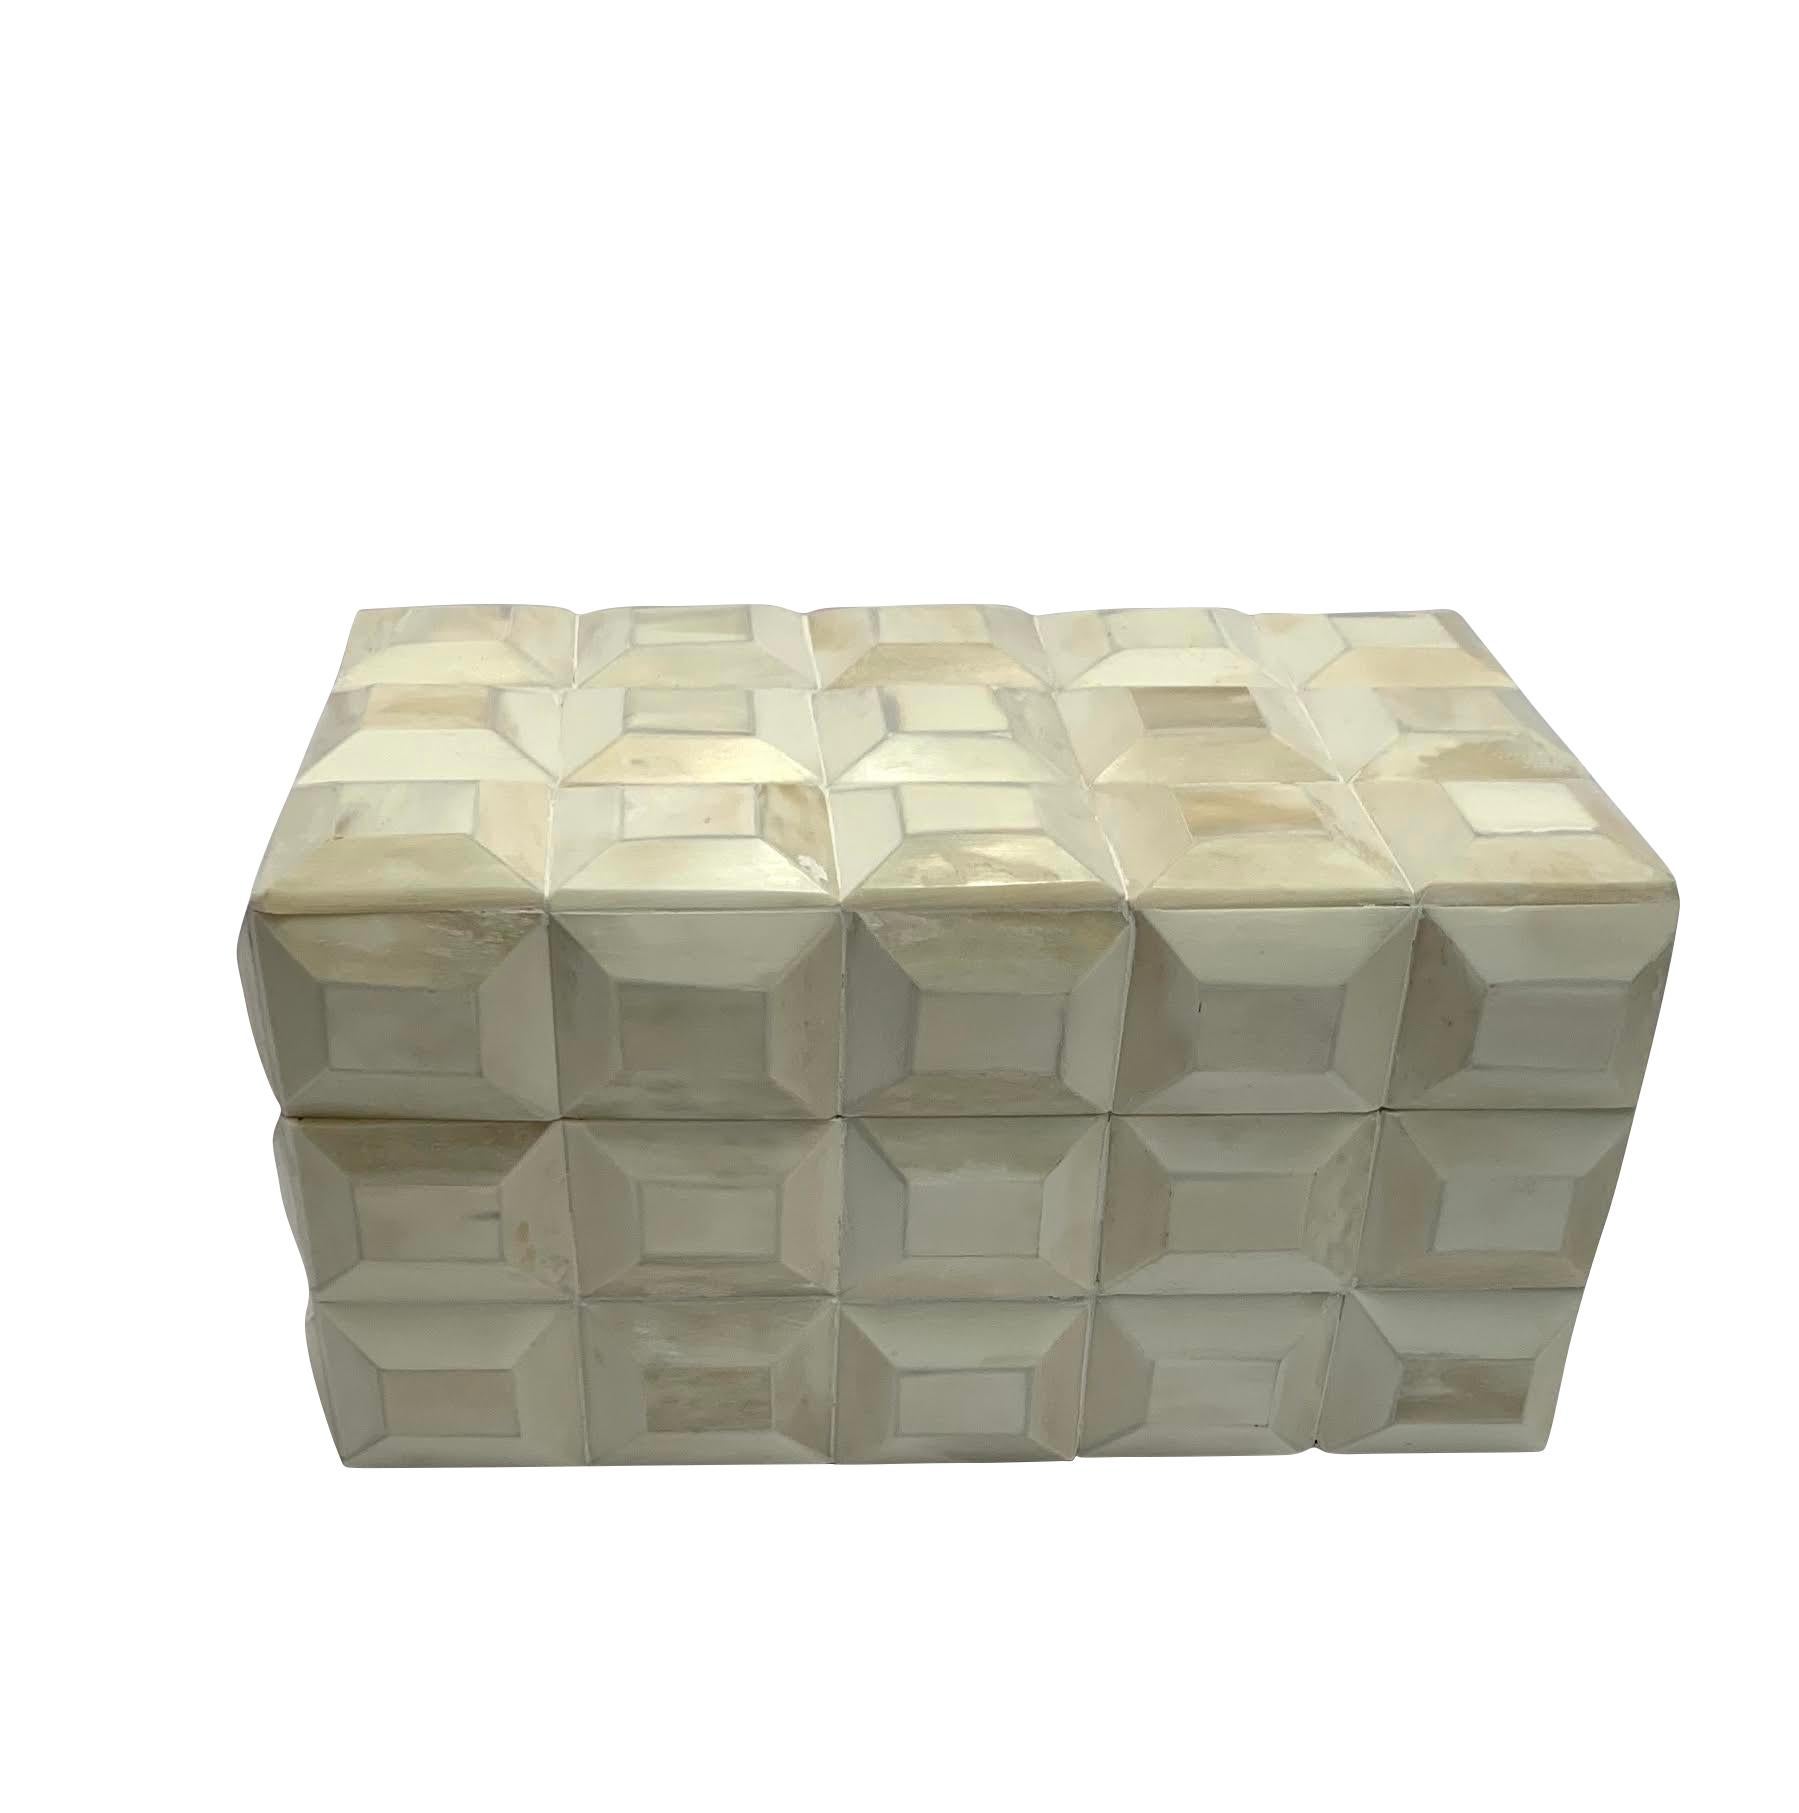 Boîte indienne contemporaine en os de couleur crème au design tridimensionnel.
Fait partie d'une grande collection de boîtes et de plateaux en os.